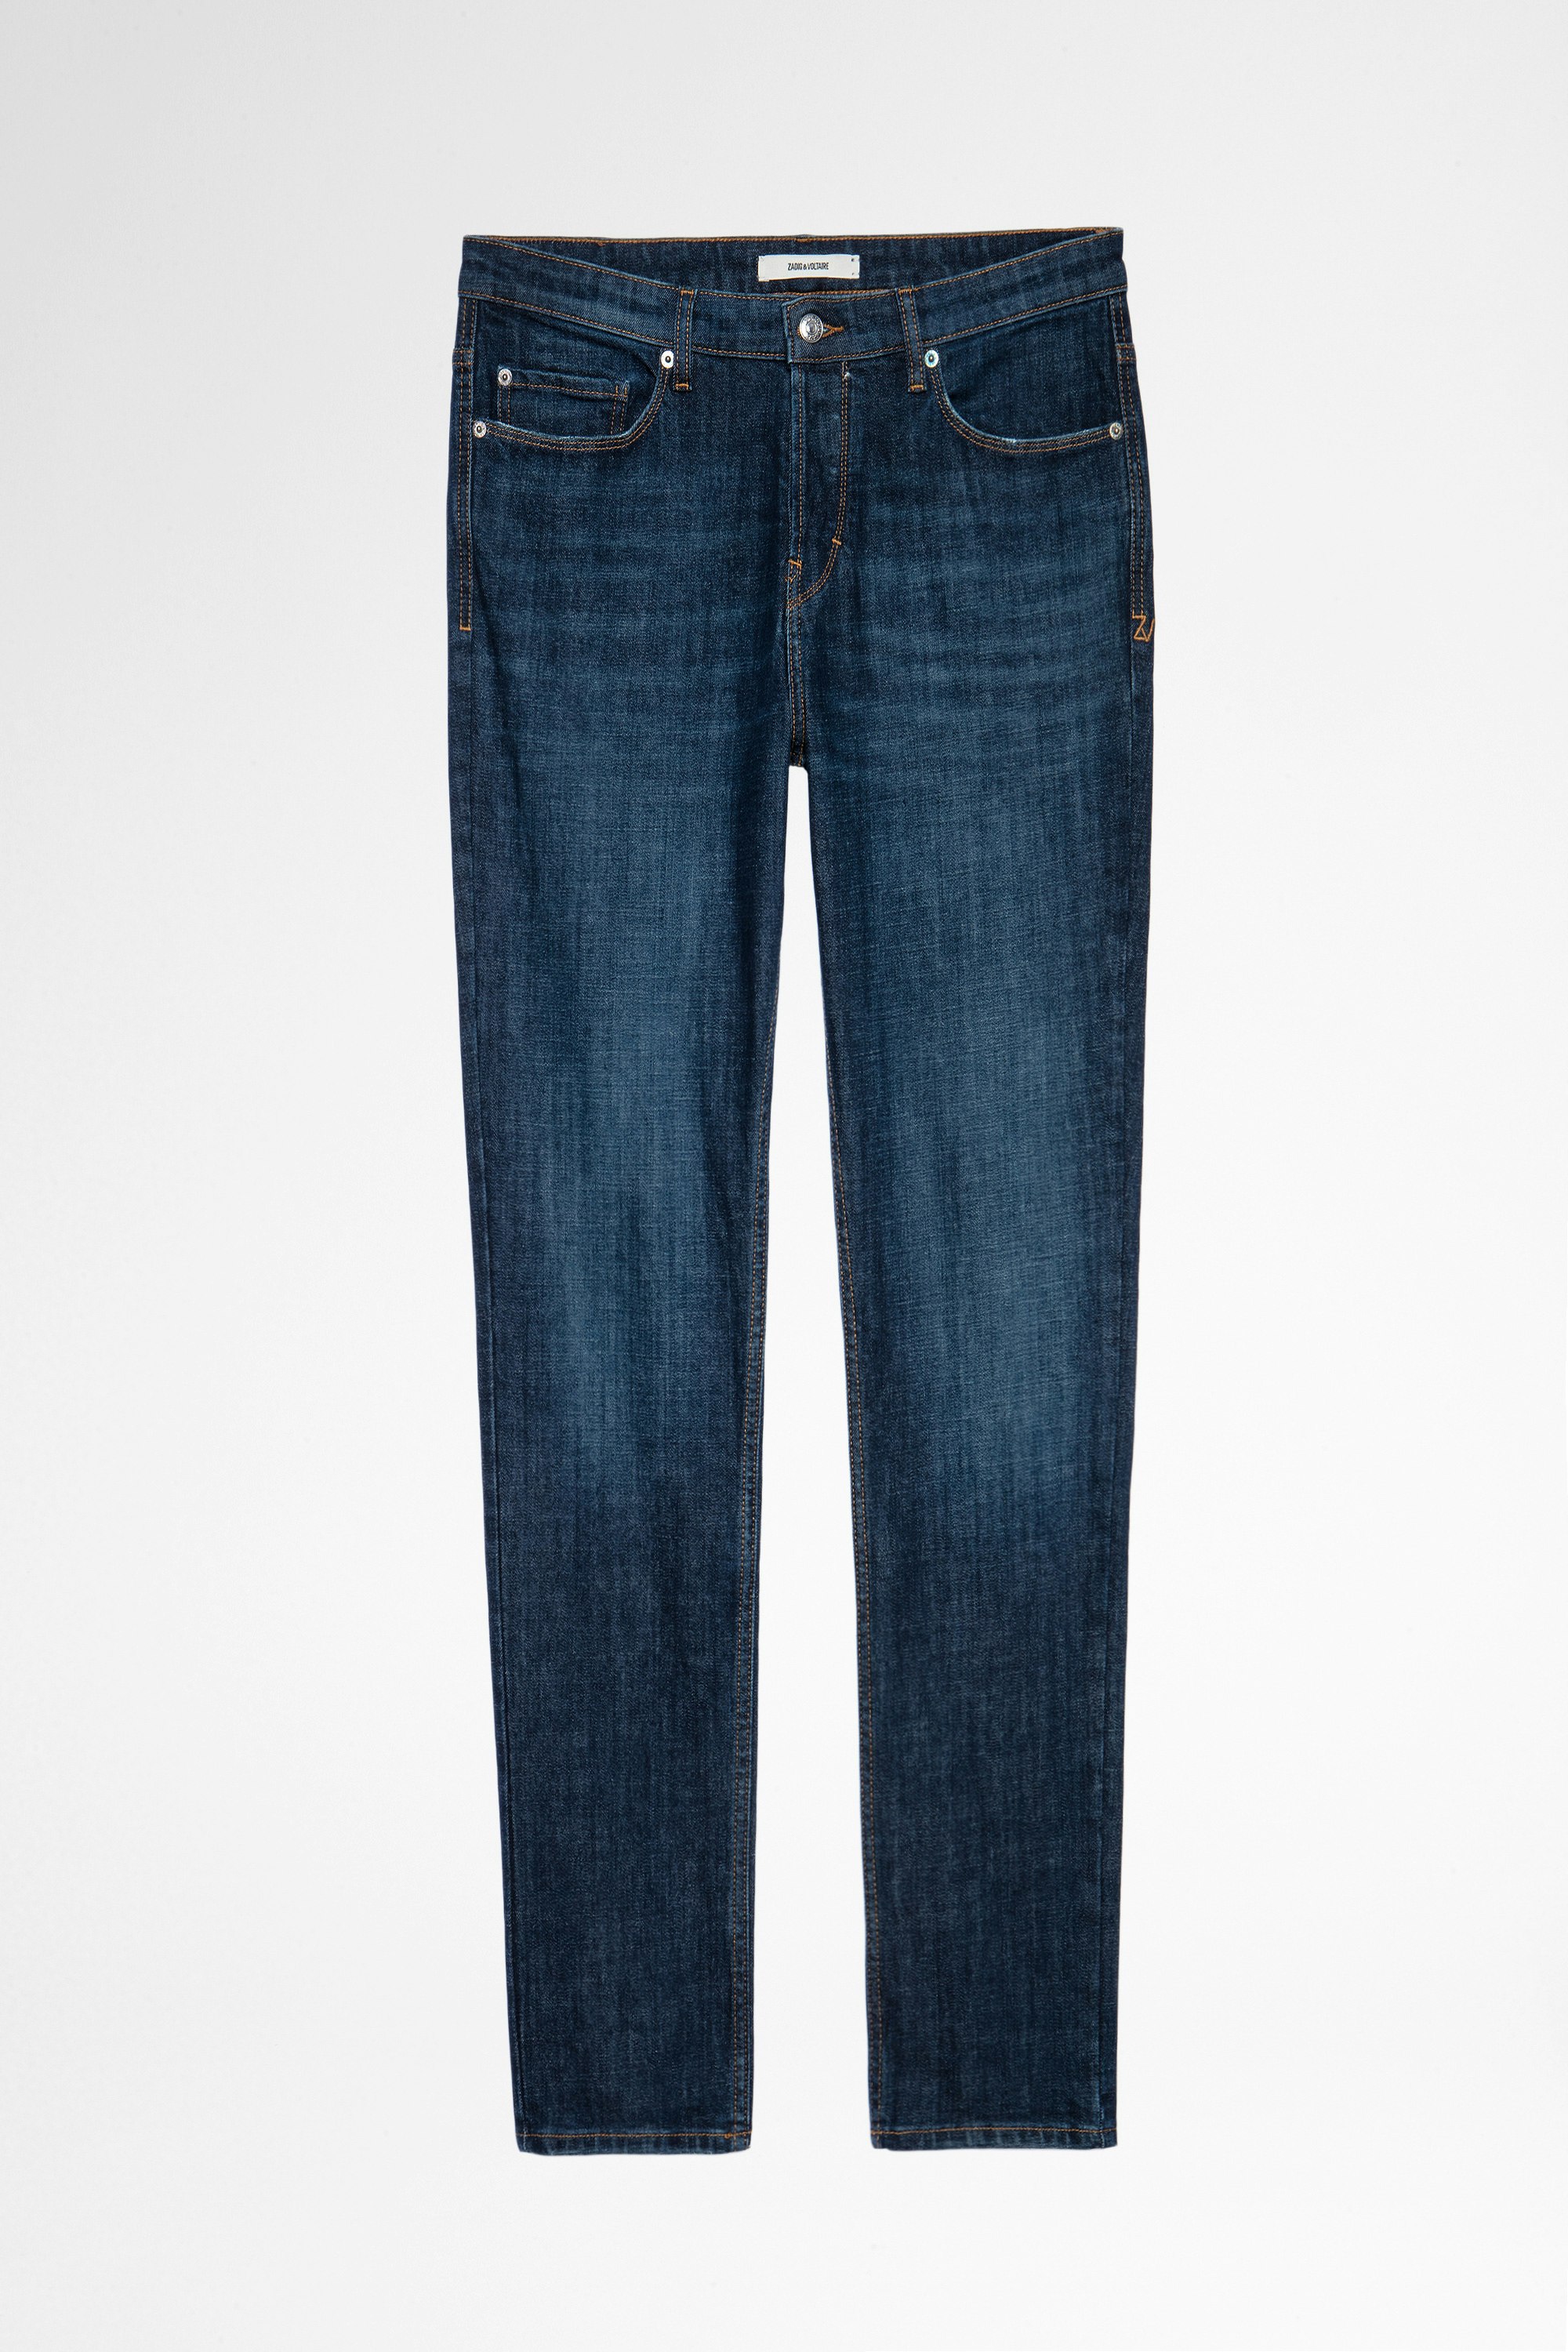 Jeans David Eco Brut Jeans blu grezzo da uomo